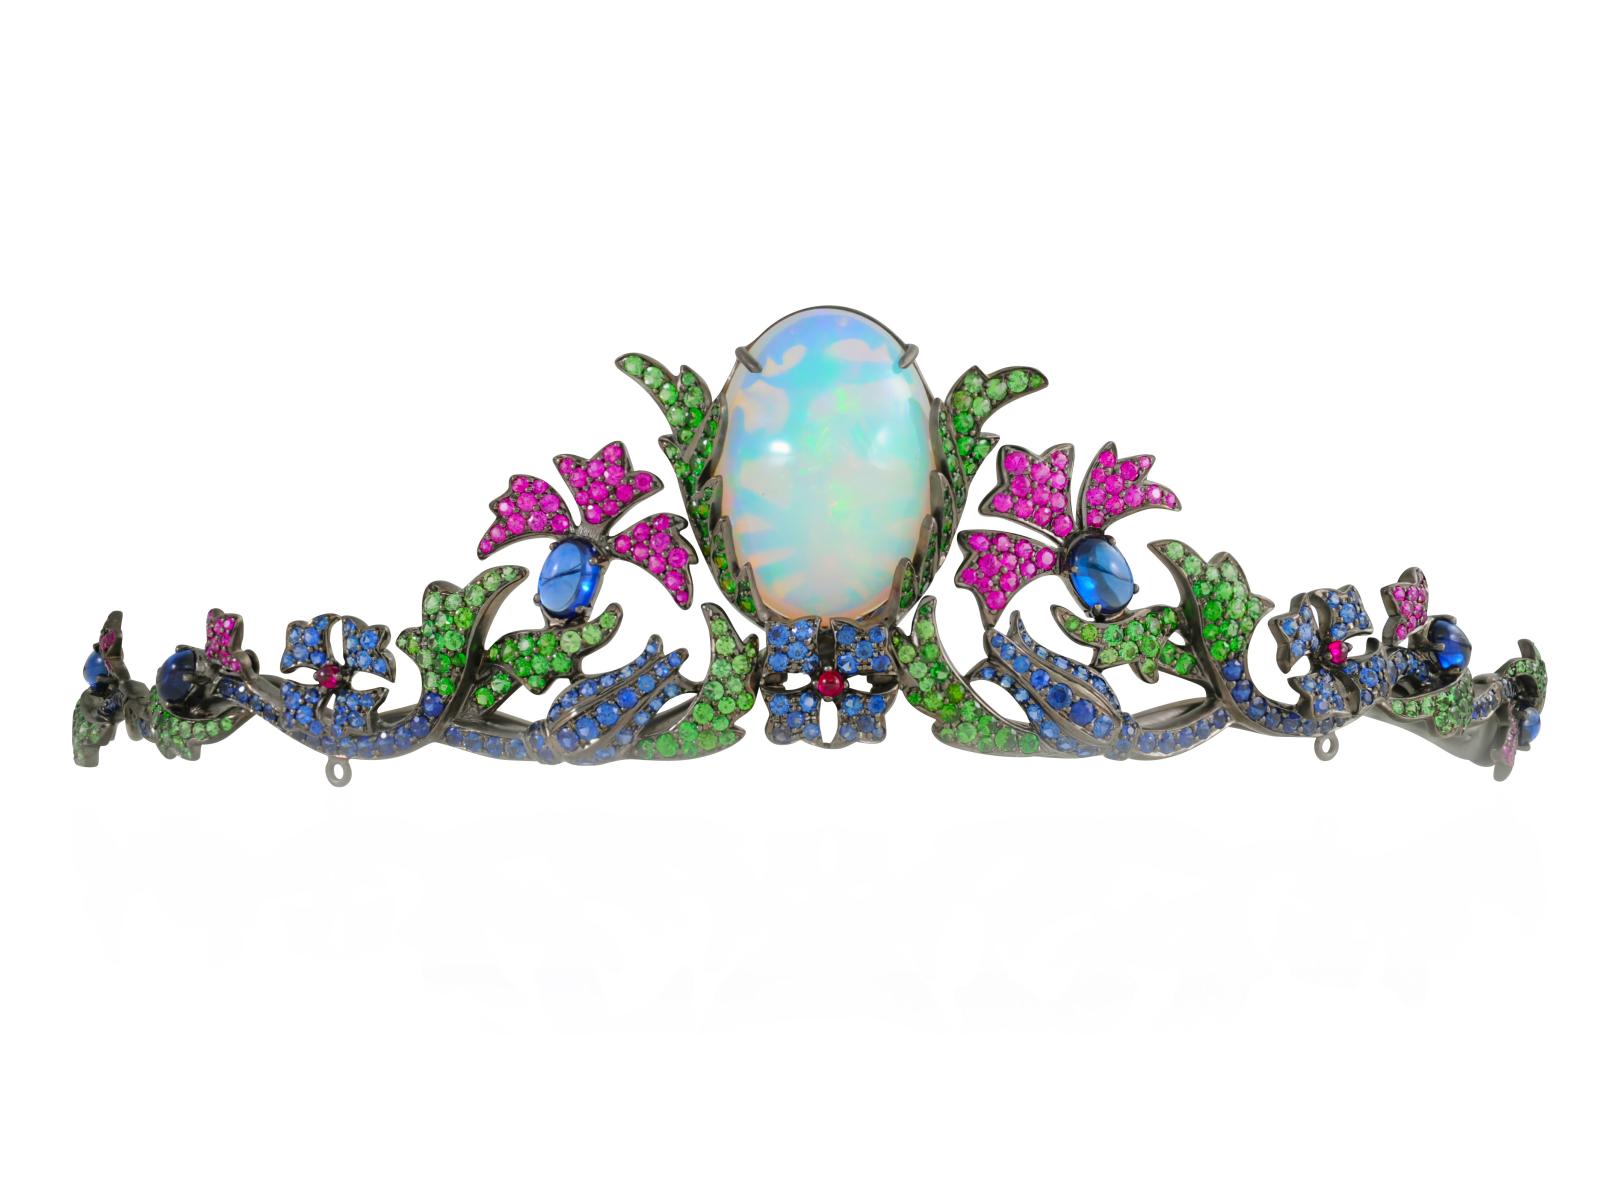 Tiare contemporaine avec opale centrale signée Lydia Courteille. © Lydia Courteille 